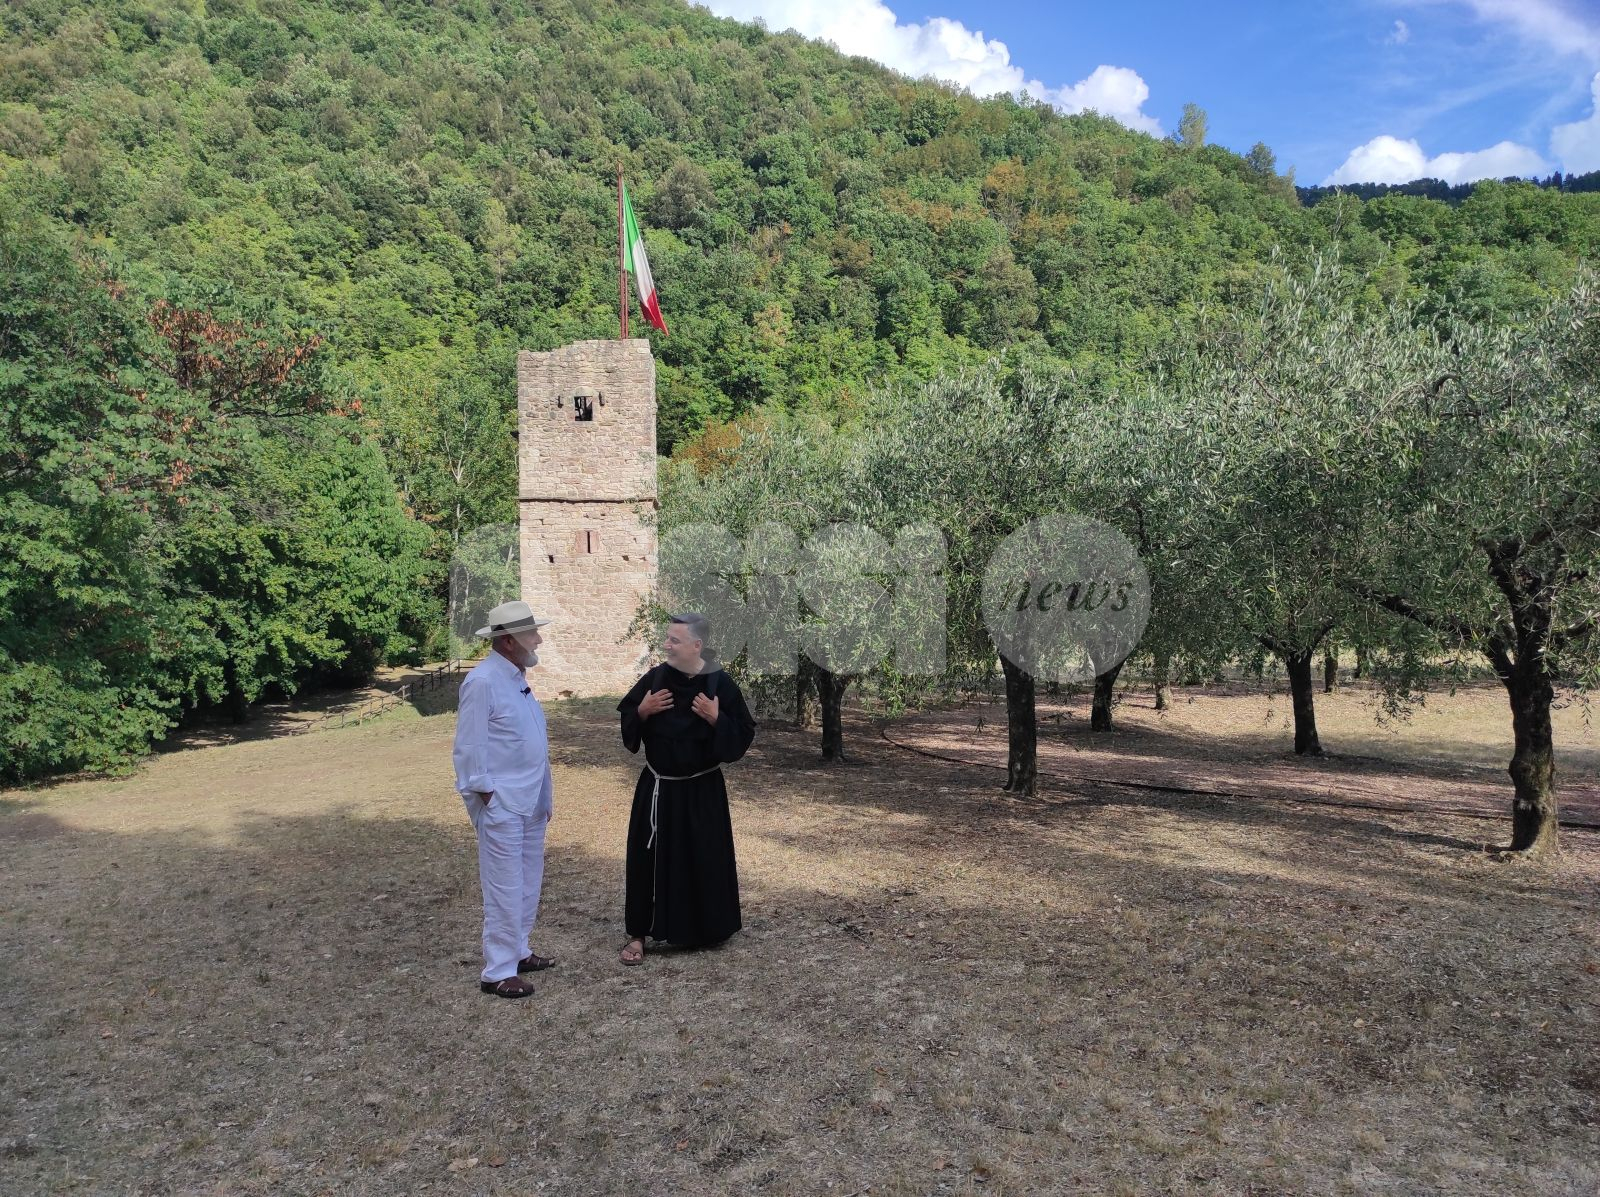 In Cammino fa tappa in Umbria: da Assisi si parla della via di Francesco